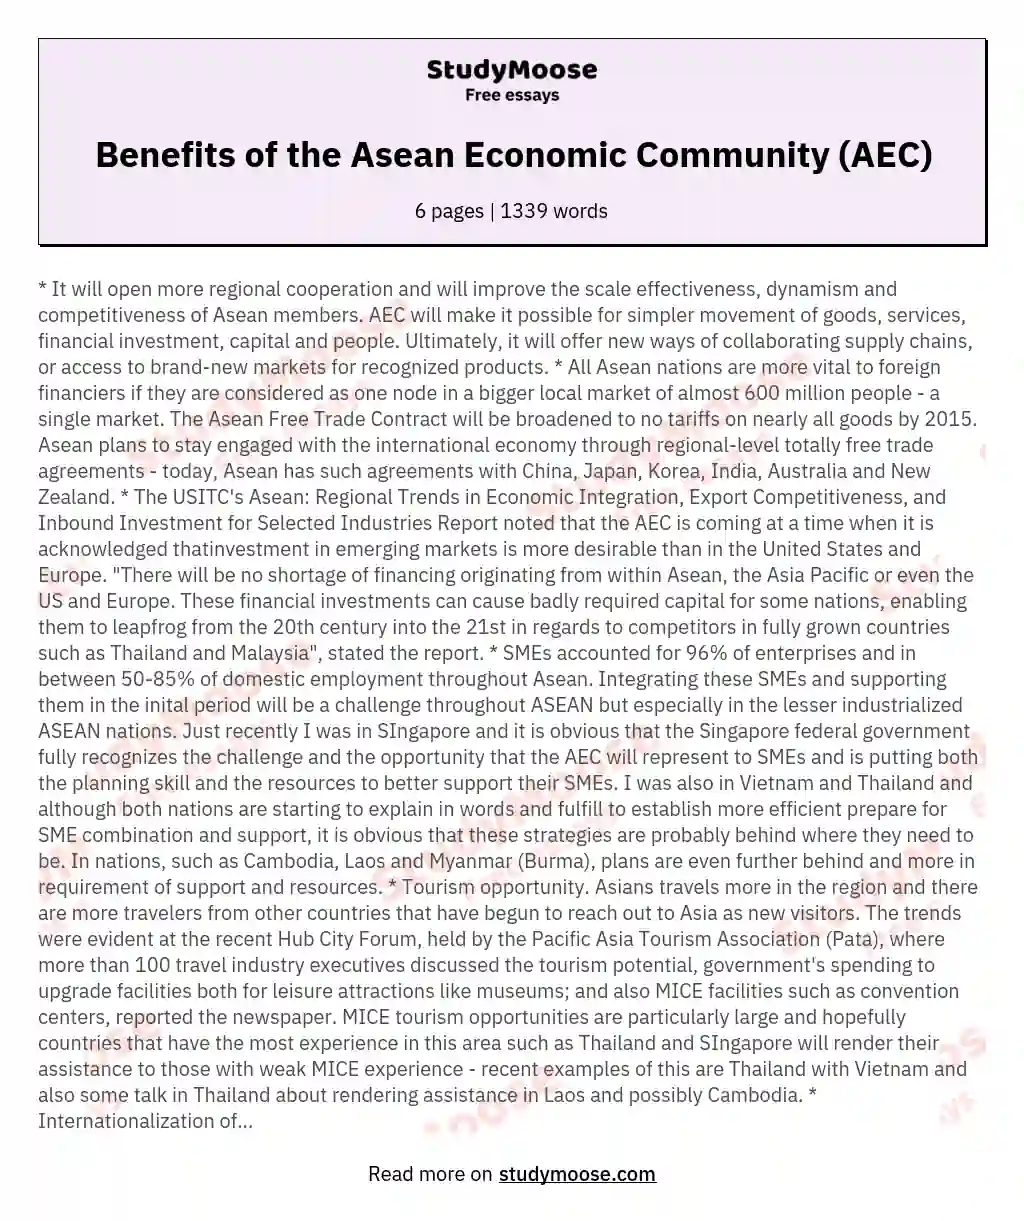 Benefits of the Asean Economic Community (AEC) essay